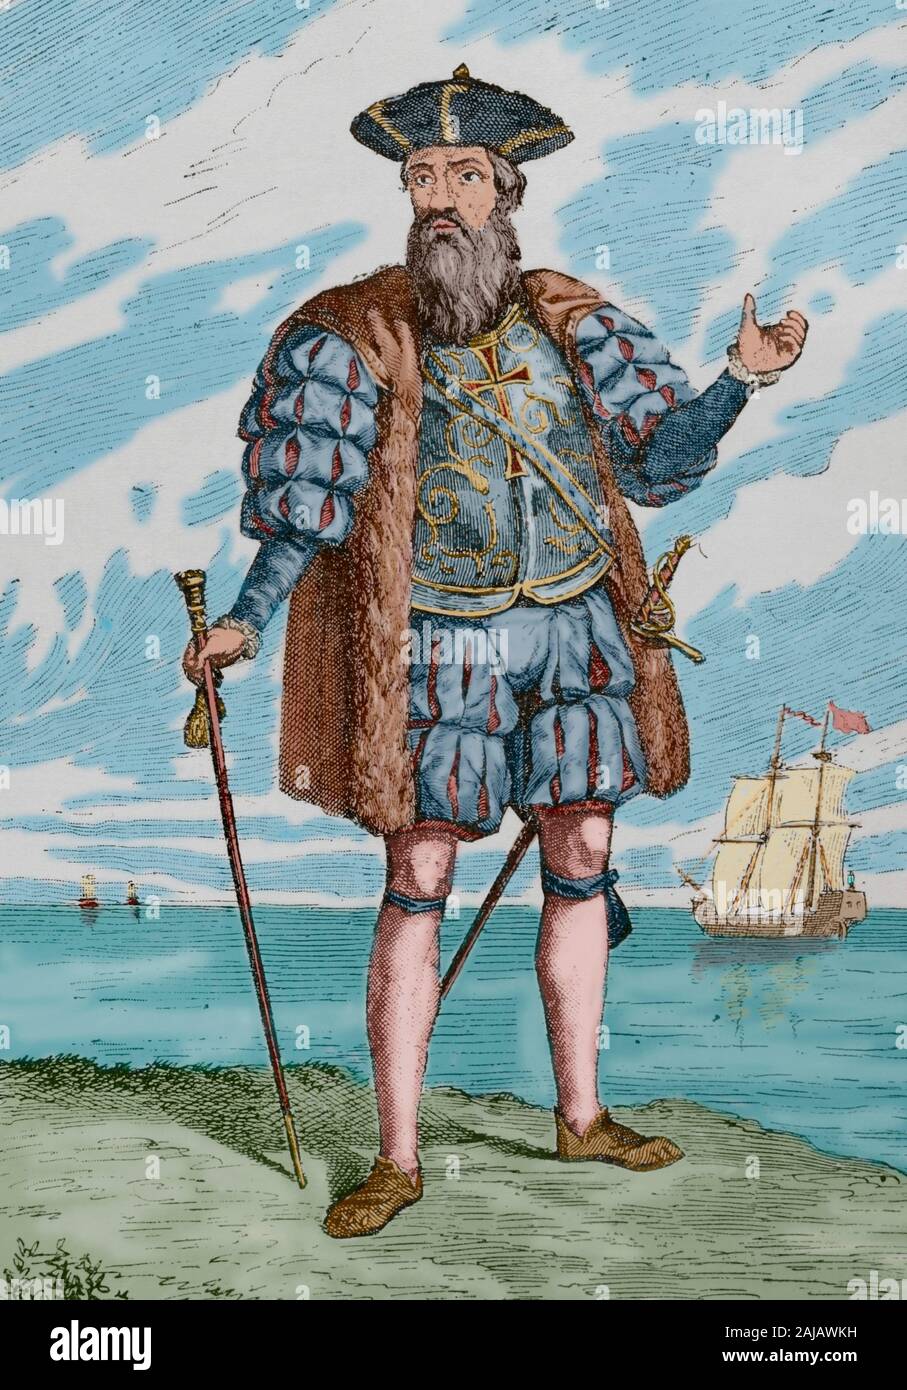 Vasco da Gama, premier comte de Vidigueira (1460-1524). L'explorateur portugais. Il a été le premier Européen à atteindre l'Inde par la mer. La gravure. Museo Militar, 1883. Plus tard la couleur. Banque D'Images